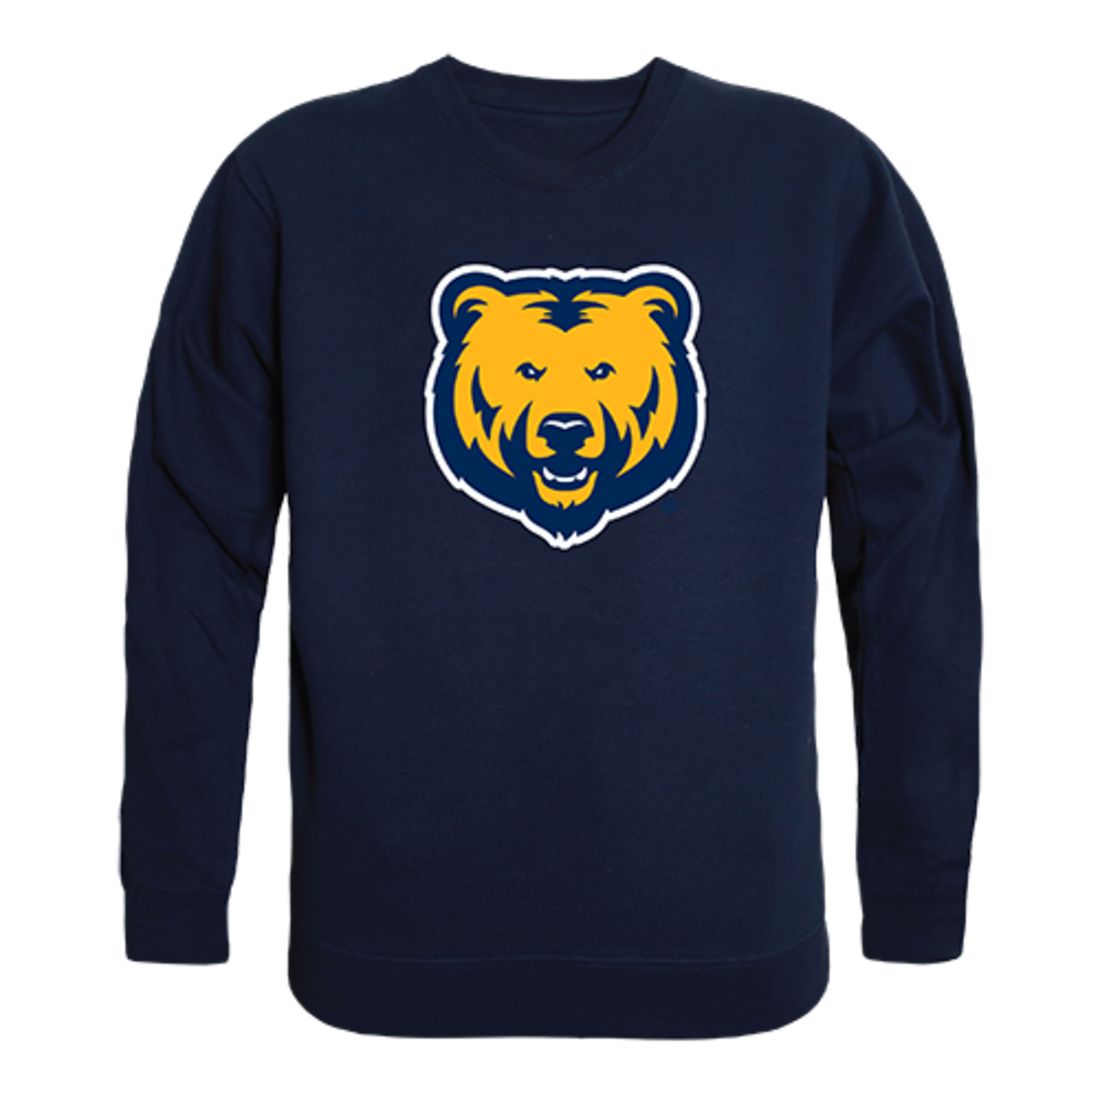 UNC University of Northern Colorado Bears Crewneck Pullover Sweatshirt Sweater Navy-Campus-Wardrobe